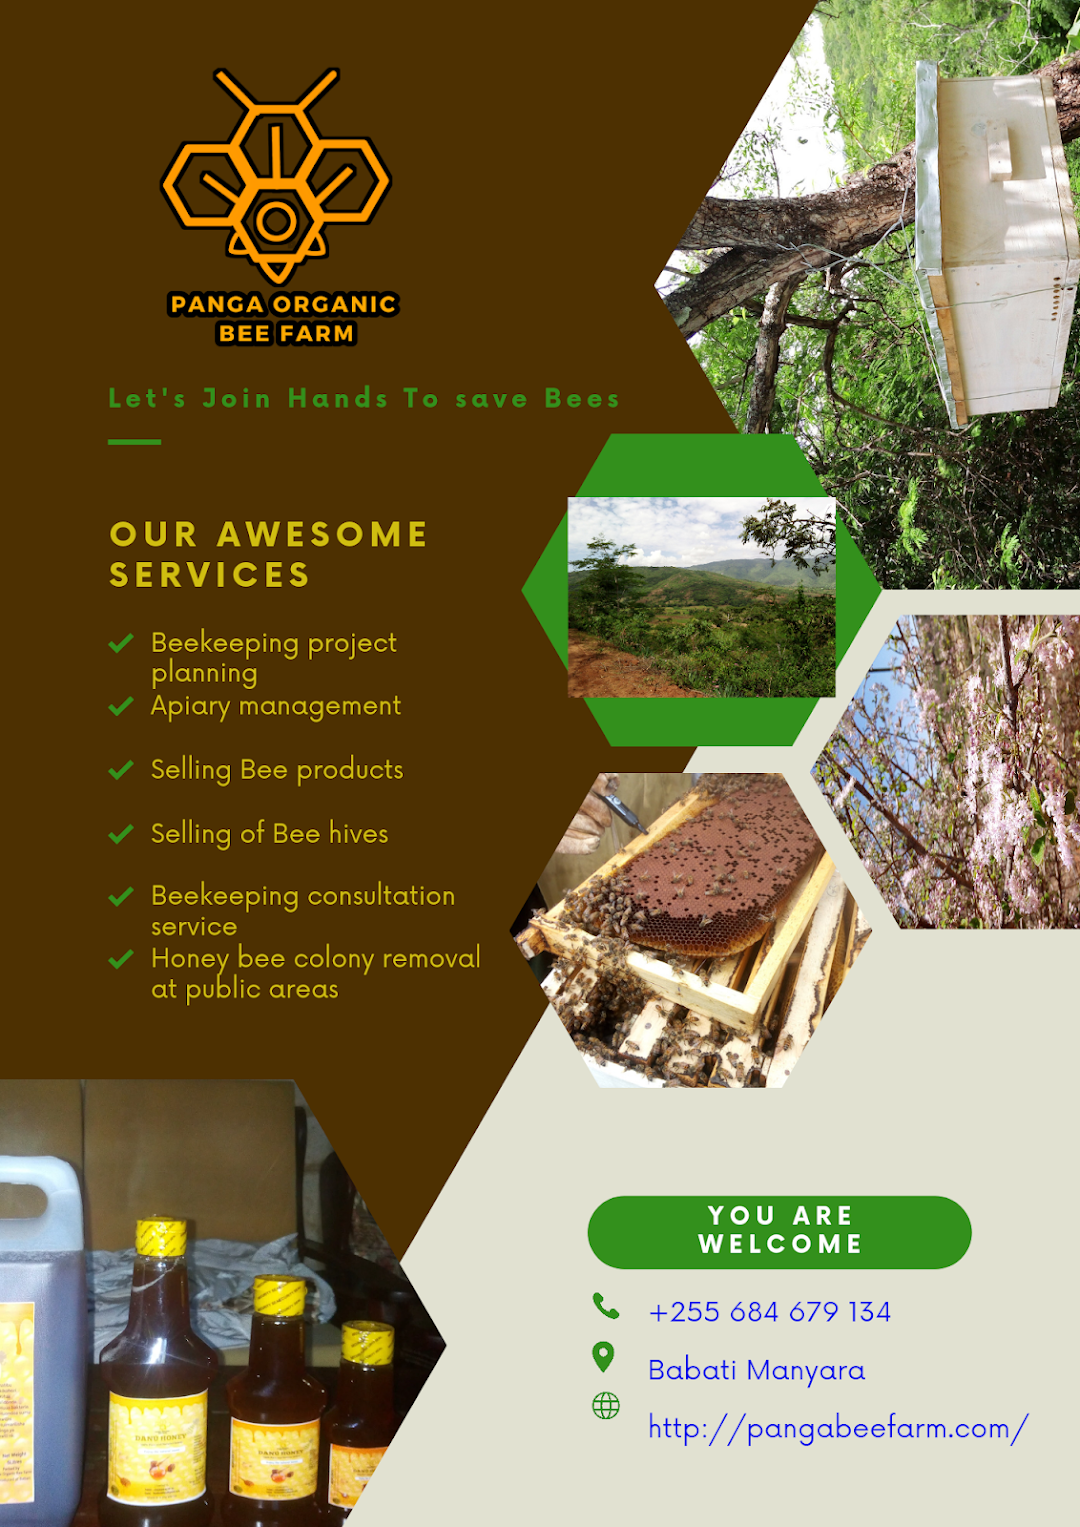 Panga Organic Bee Farm